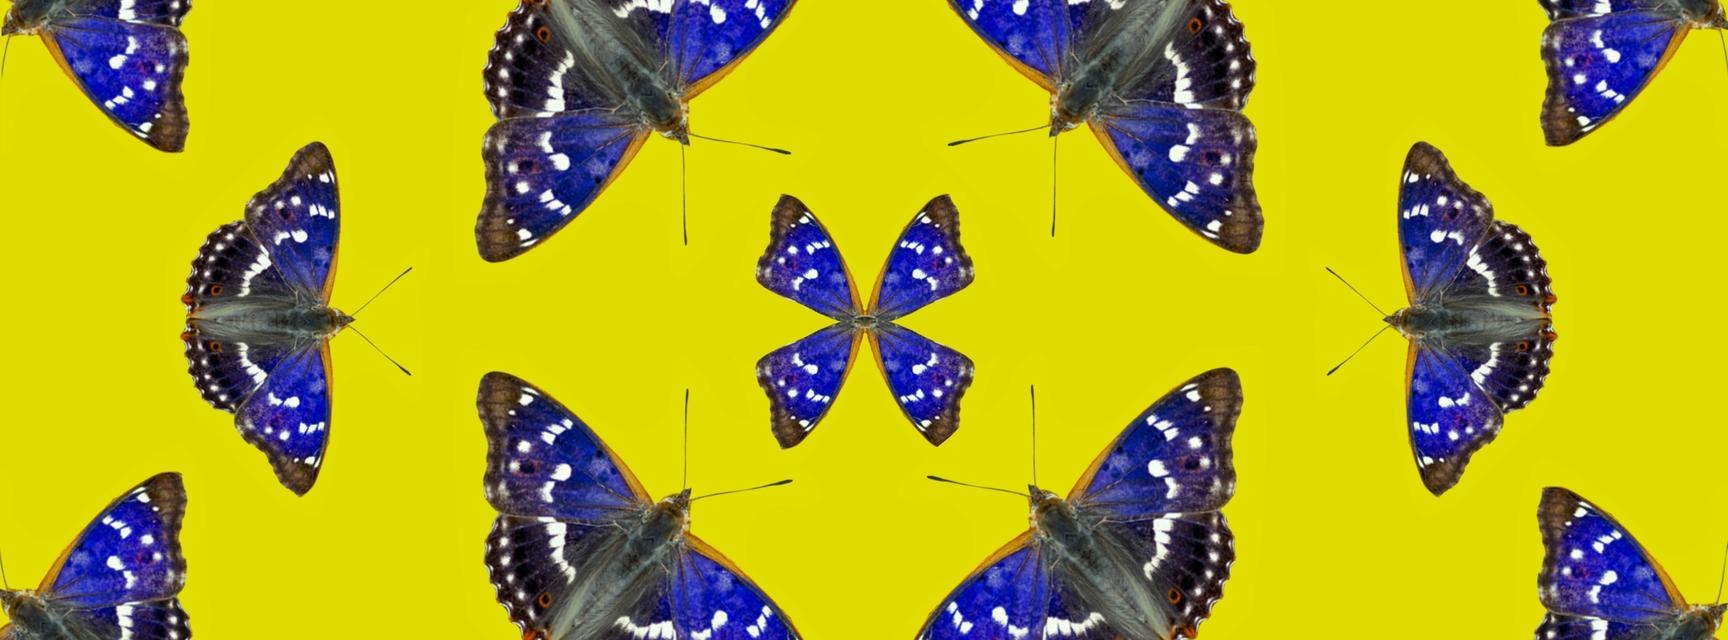 Purple emperor butterflies arranged in a geometric pattern